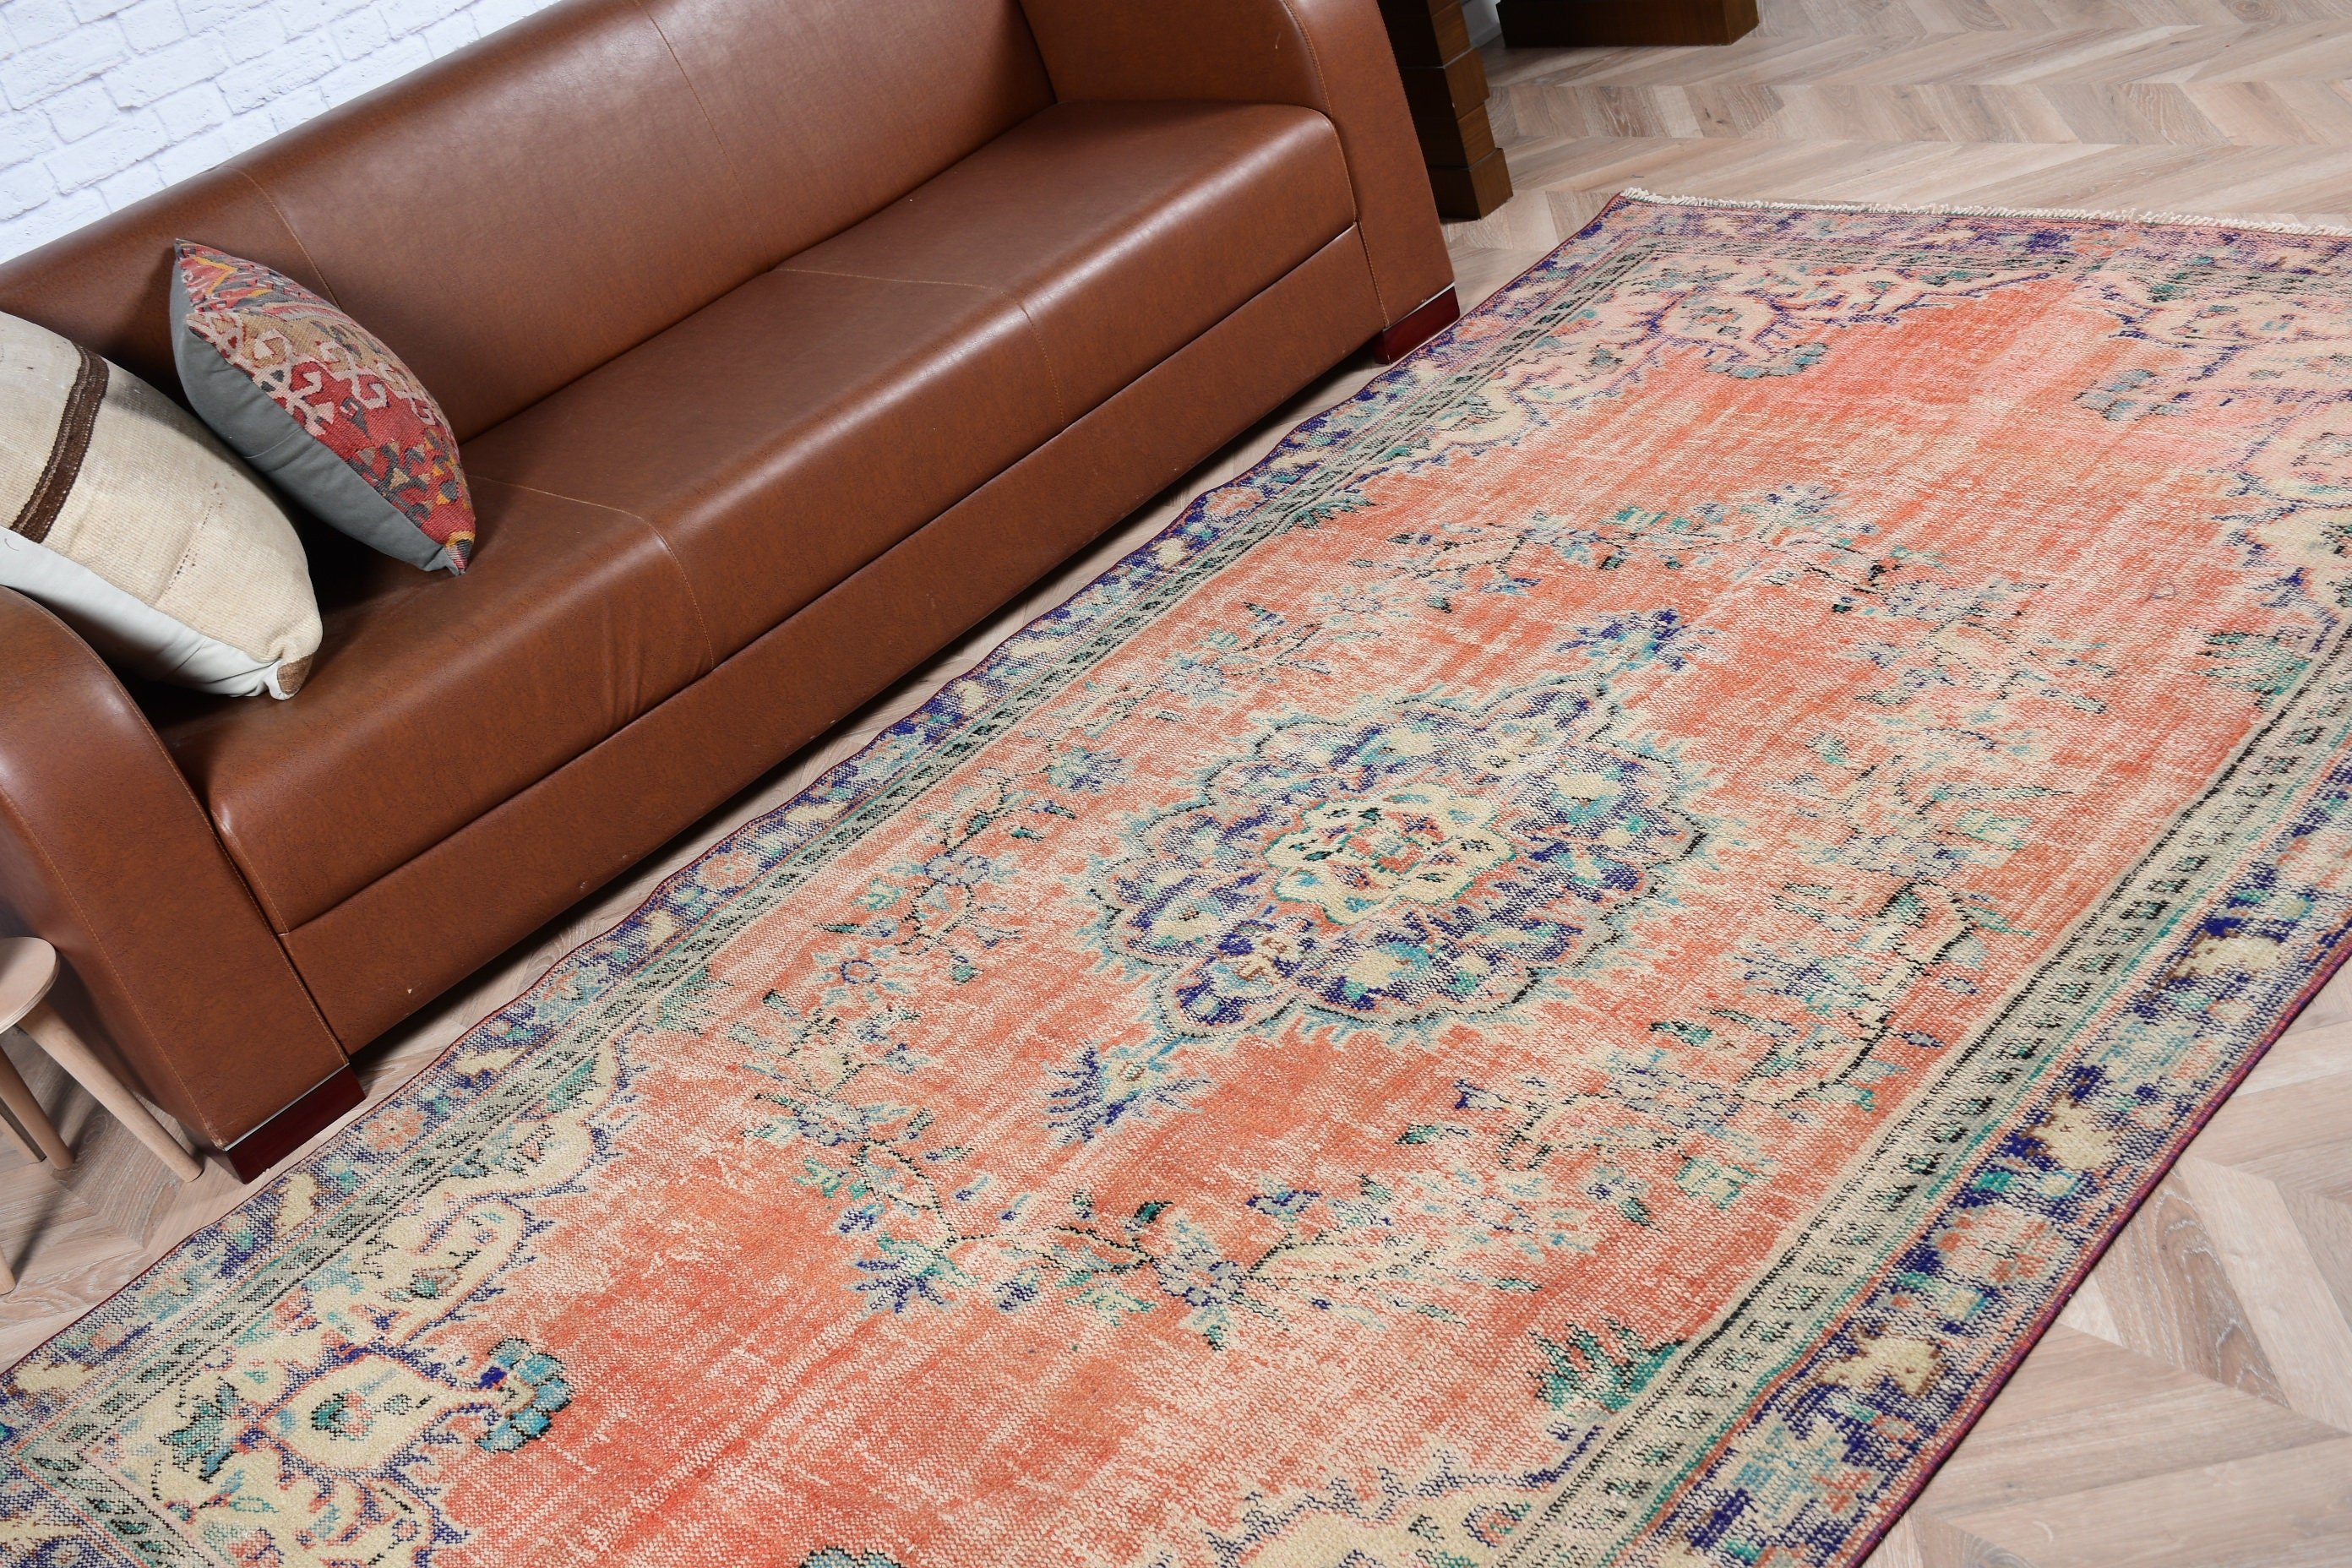 Oriental Rug, Floor Rug, 5.3x8.7 ft Large Rugs, Living Room Rug, Abstract Rugs, Salon Rugs, Orange Bedroom Rugs, Turkish Rug, Vintage Rug